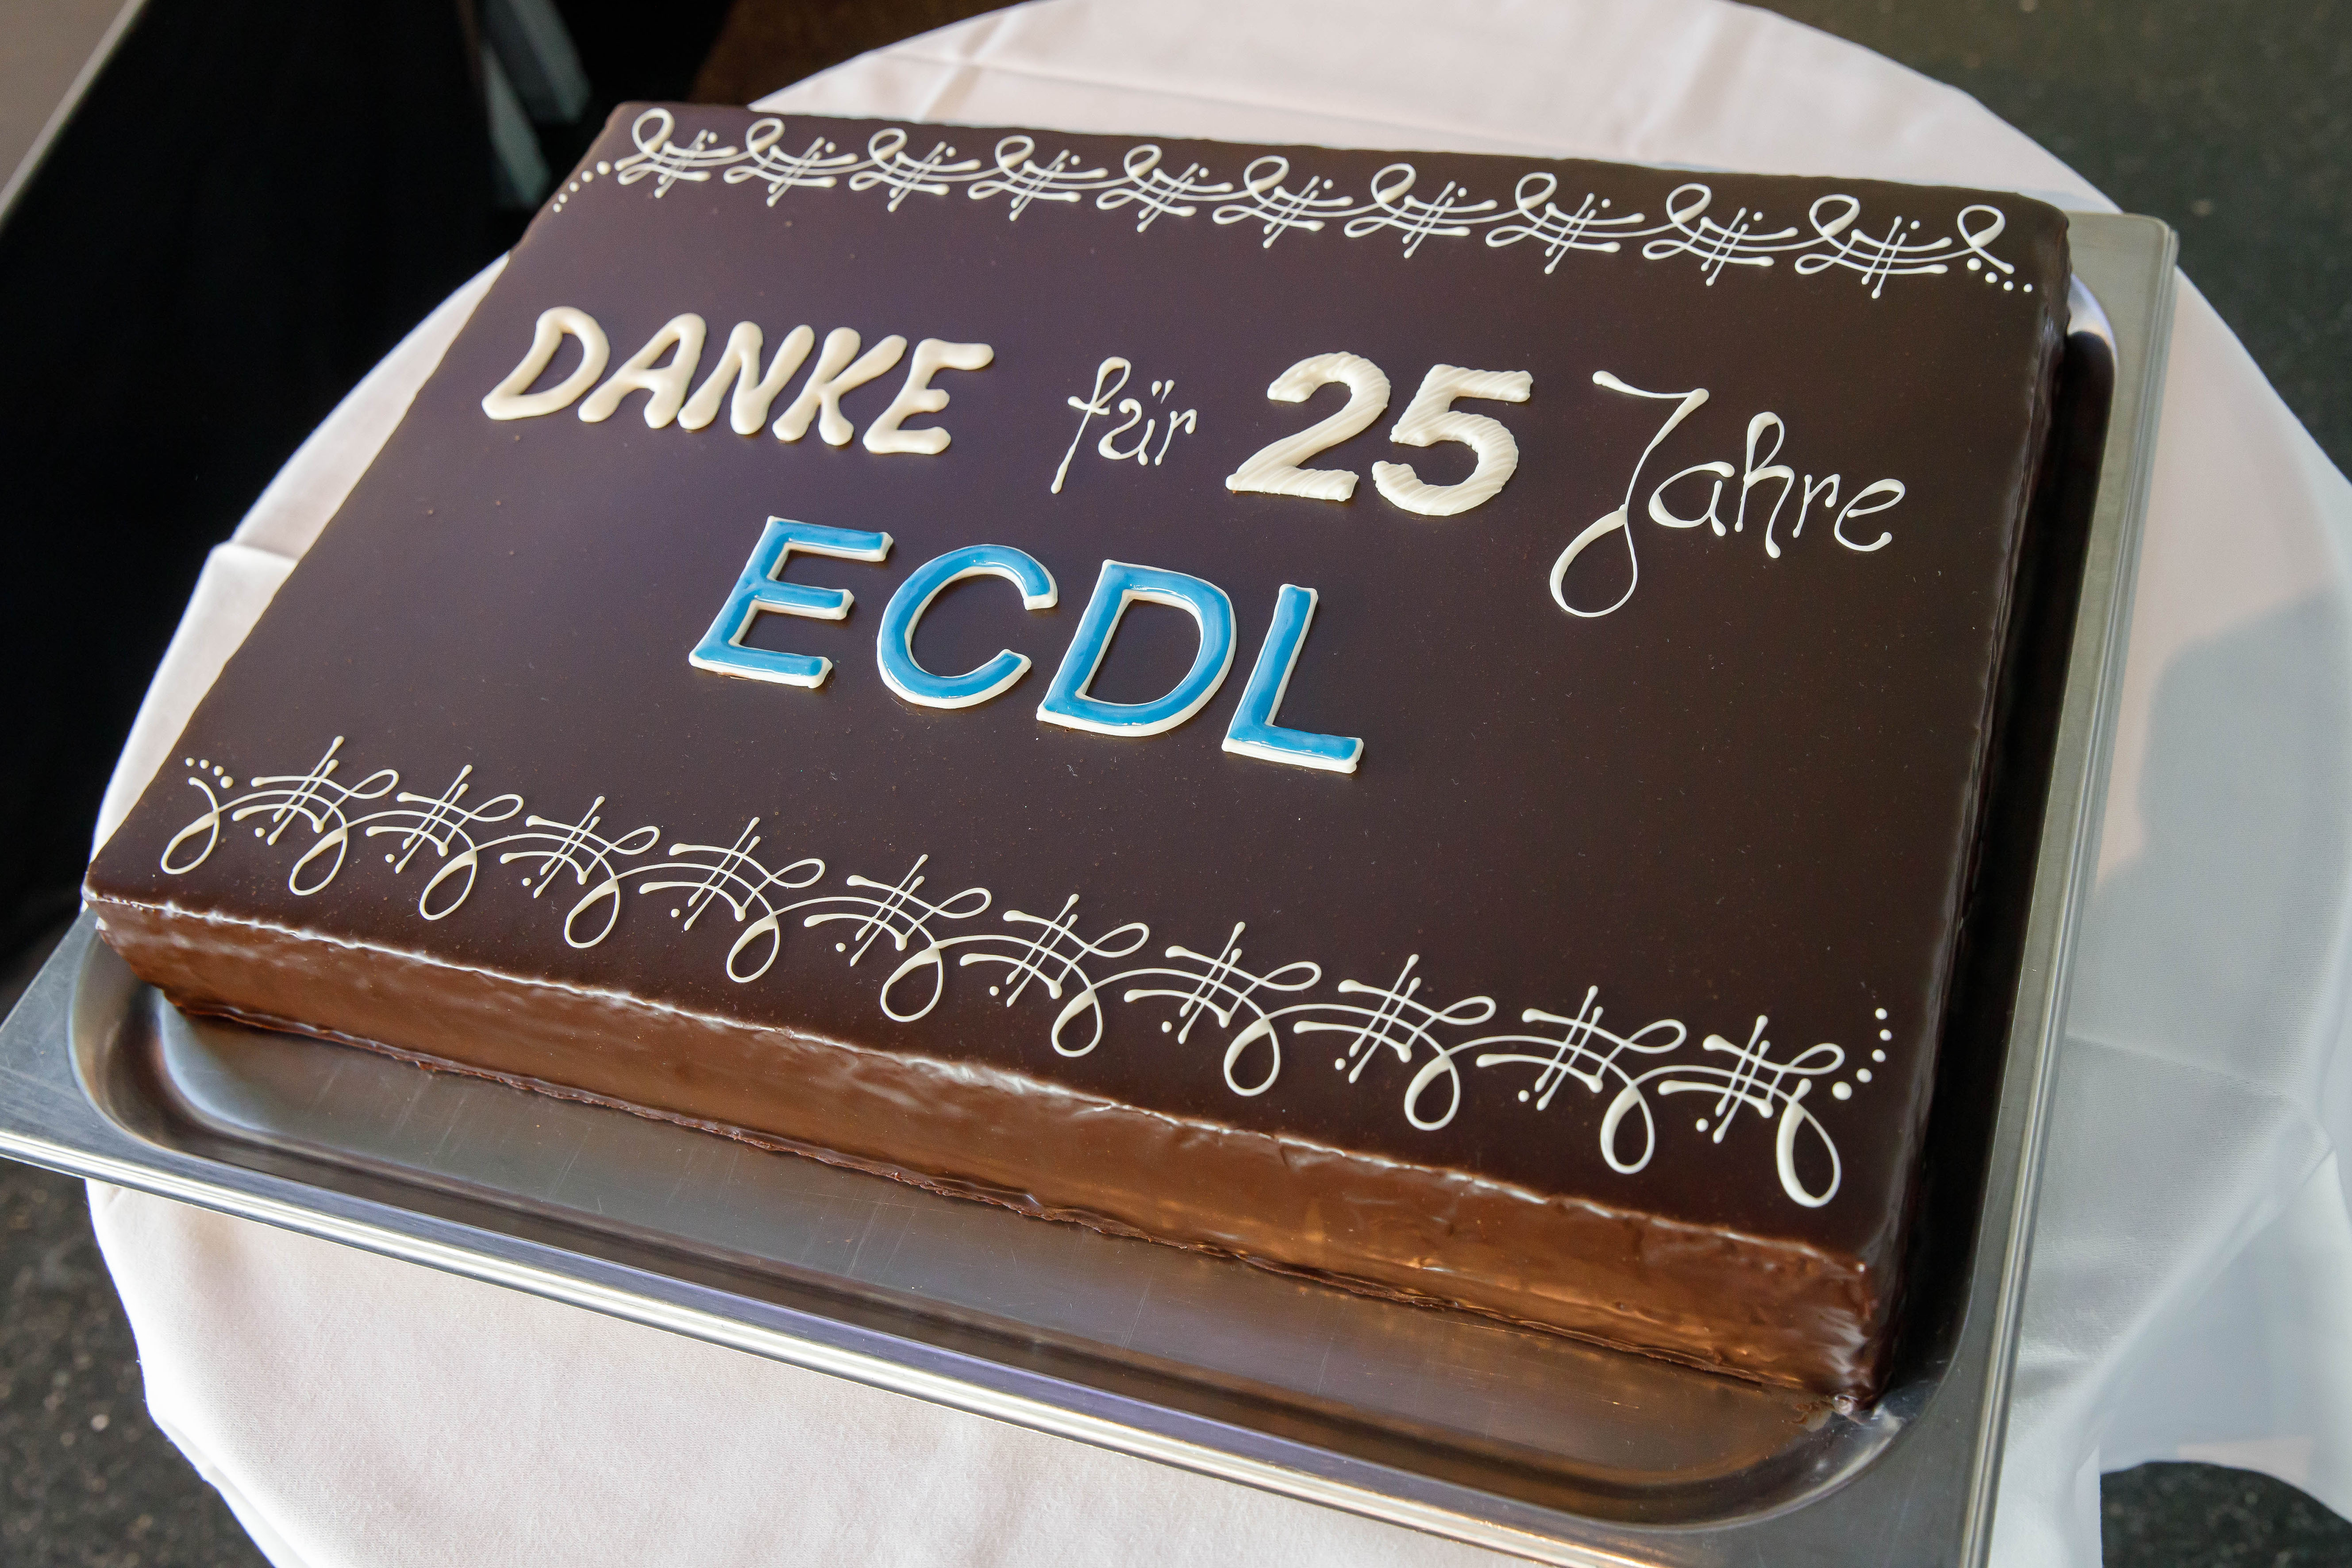 25 Jahre ECDL Torte anlässlich des Events in Linz